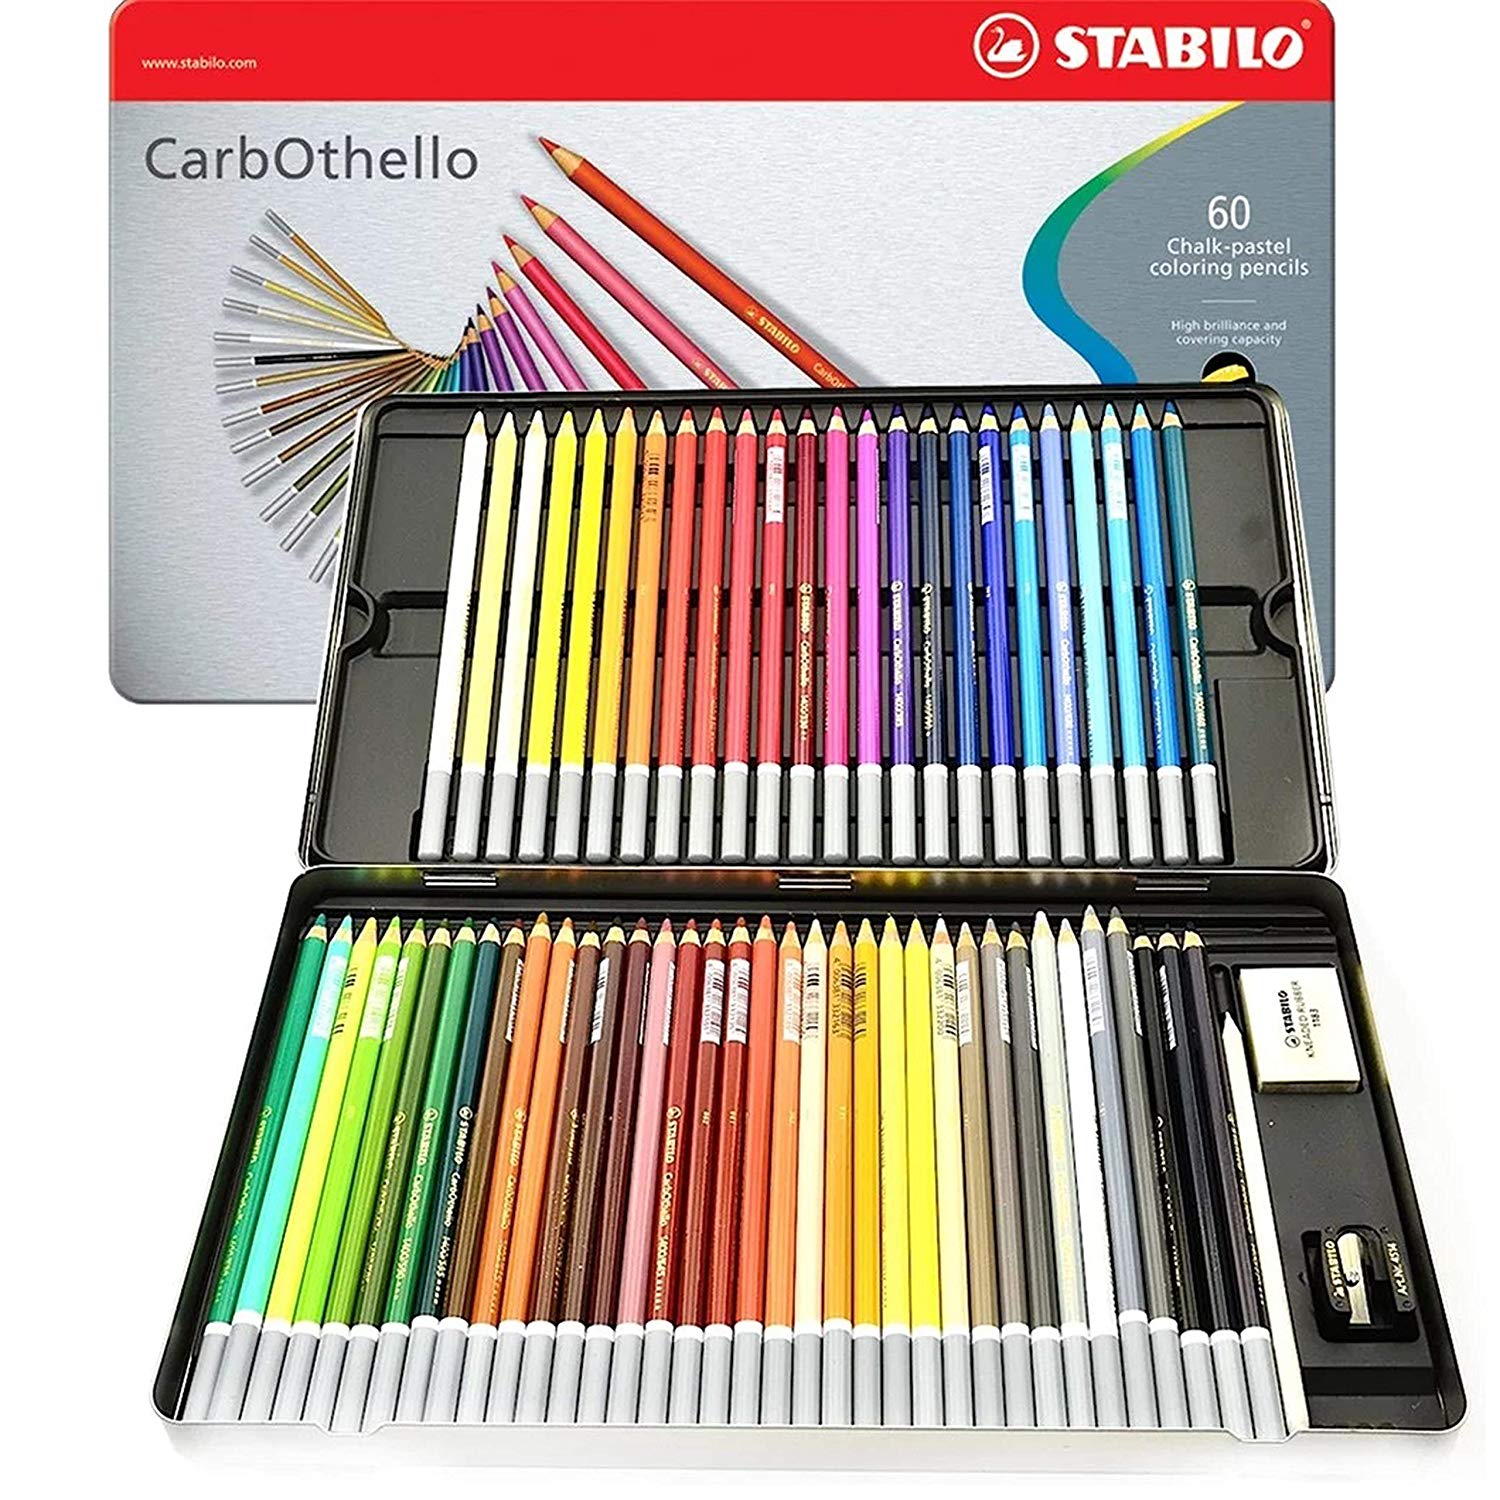 Crayon pastel Stabilo Carbothello, jeu de 60 couleurs